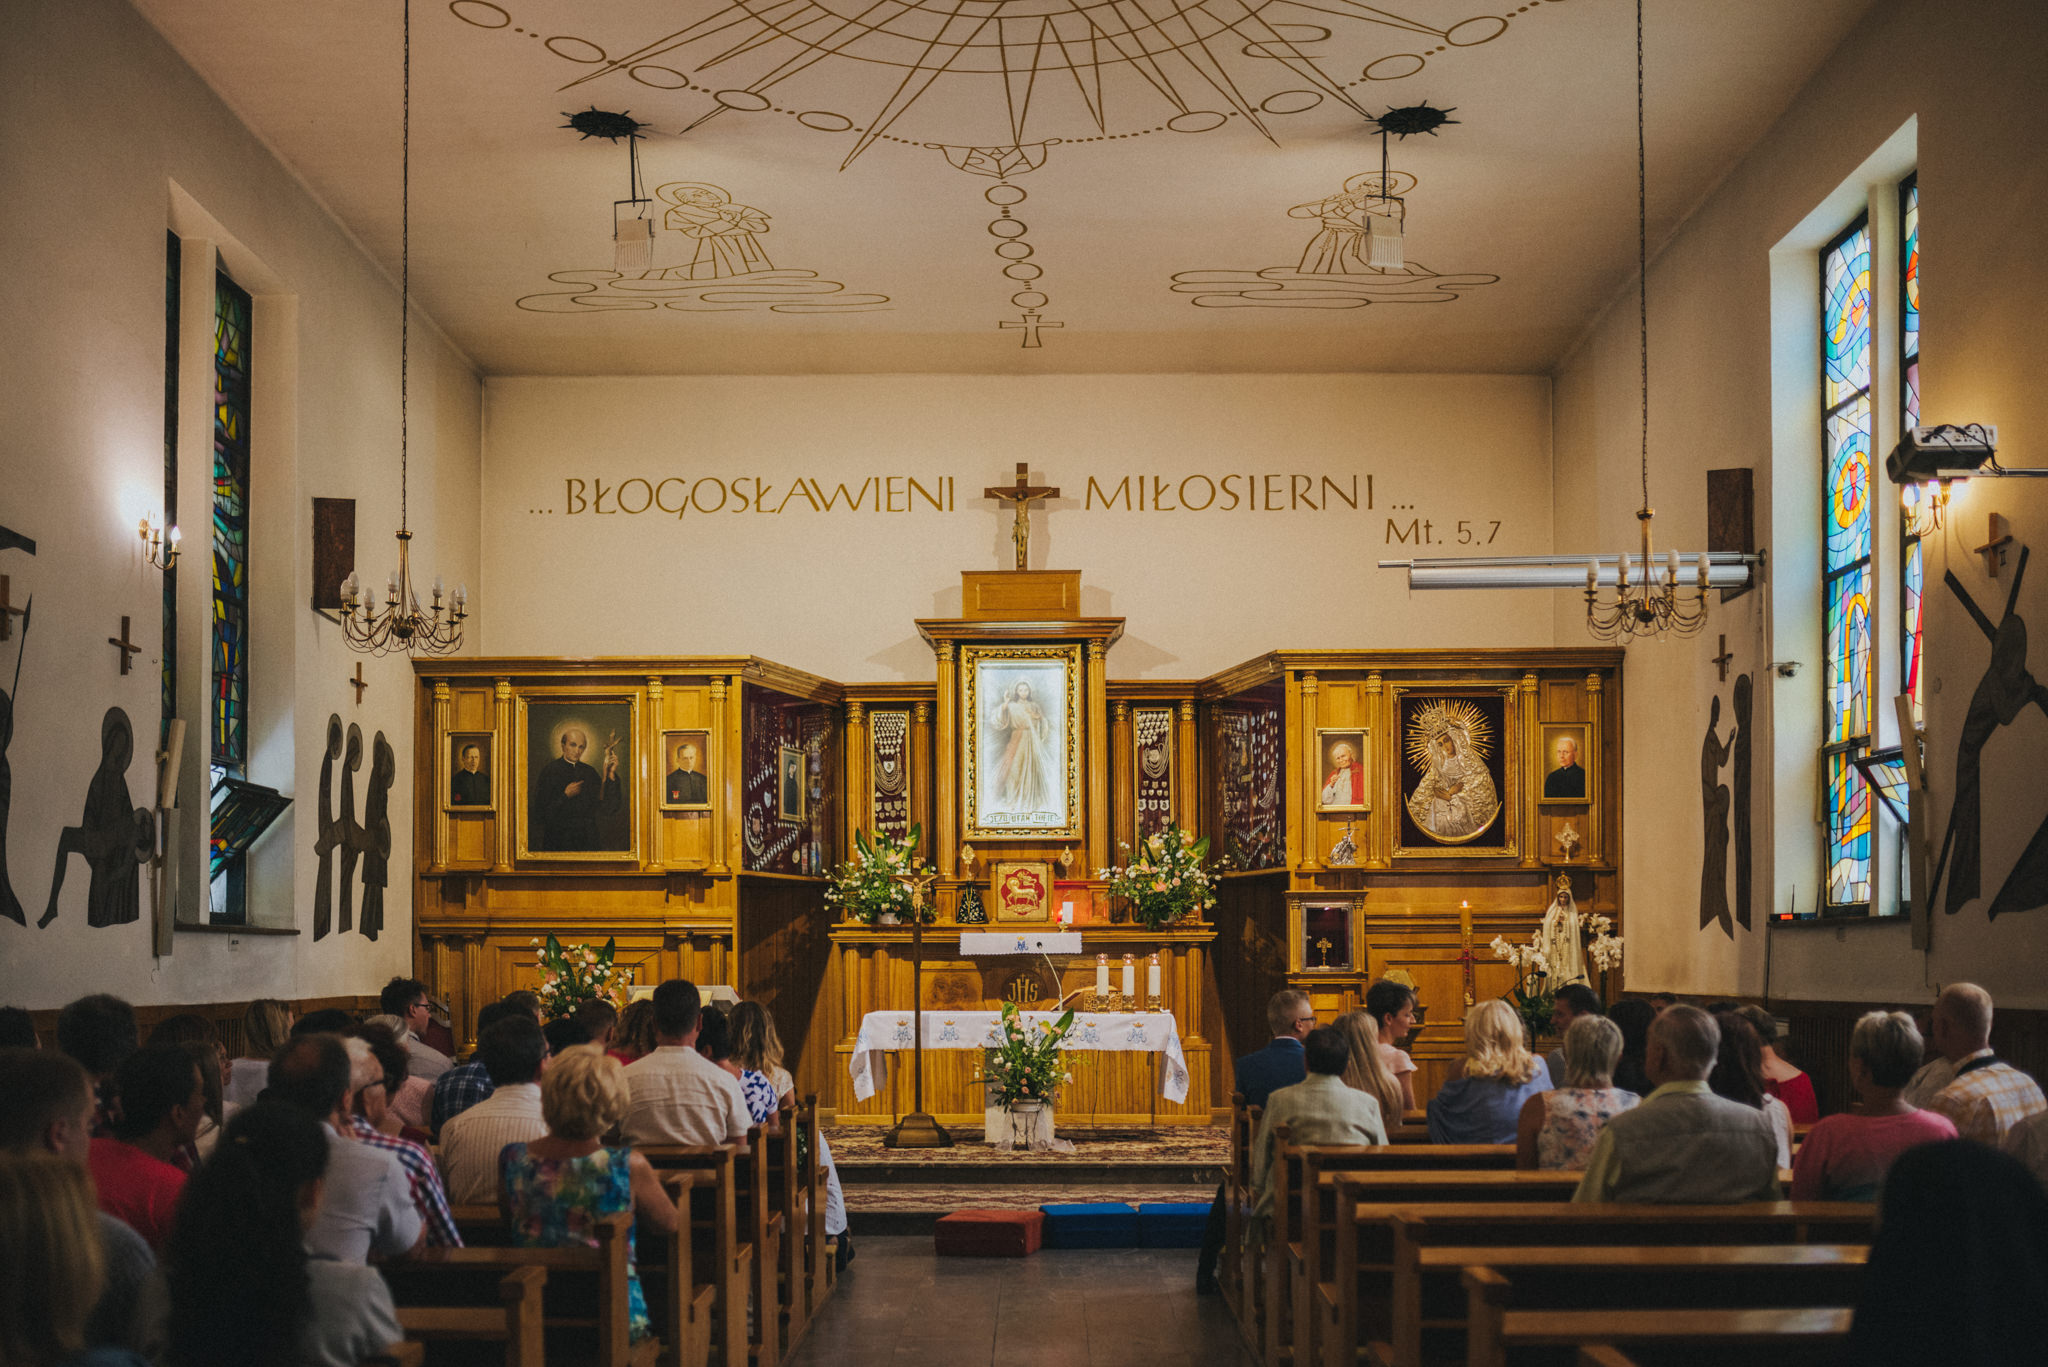 Chrzest Małgosi | Fotograf na chrzest Częstochowa